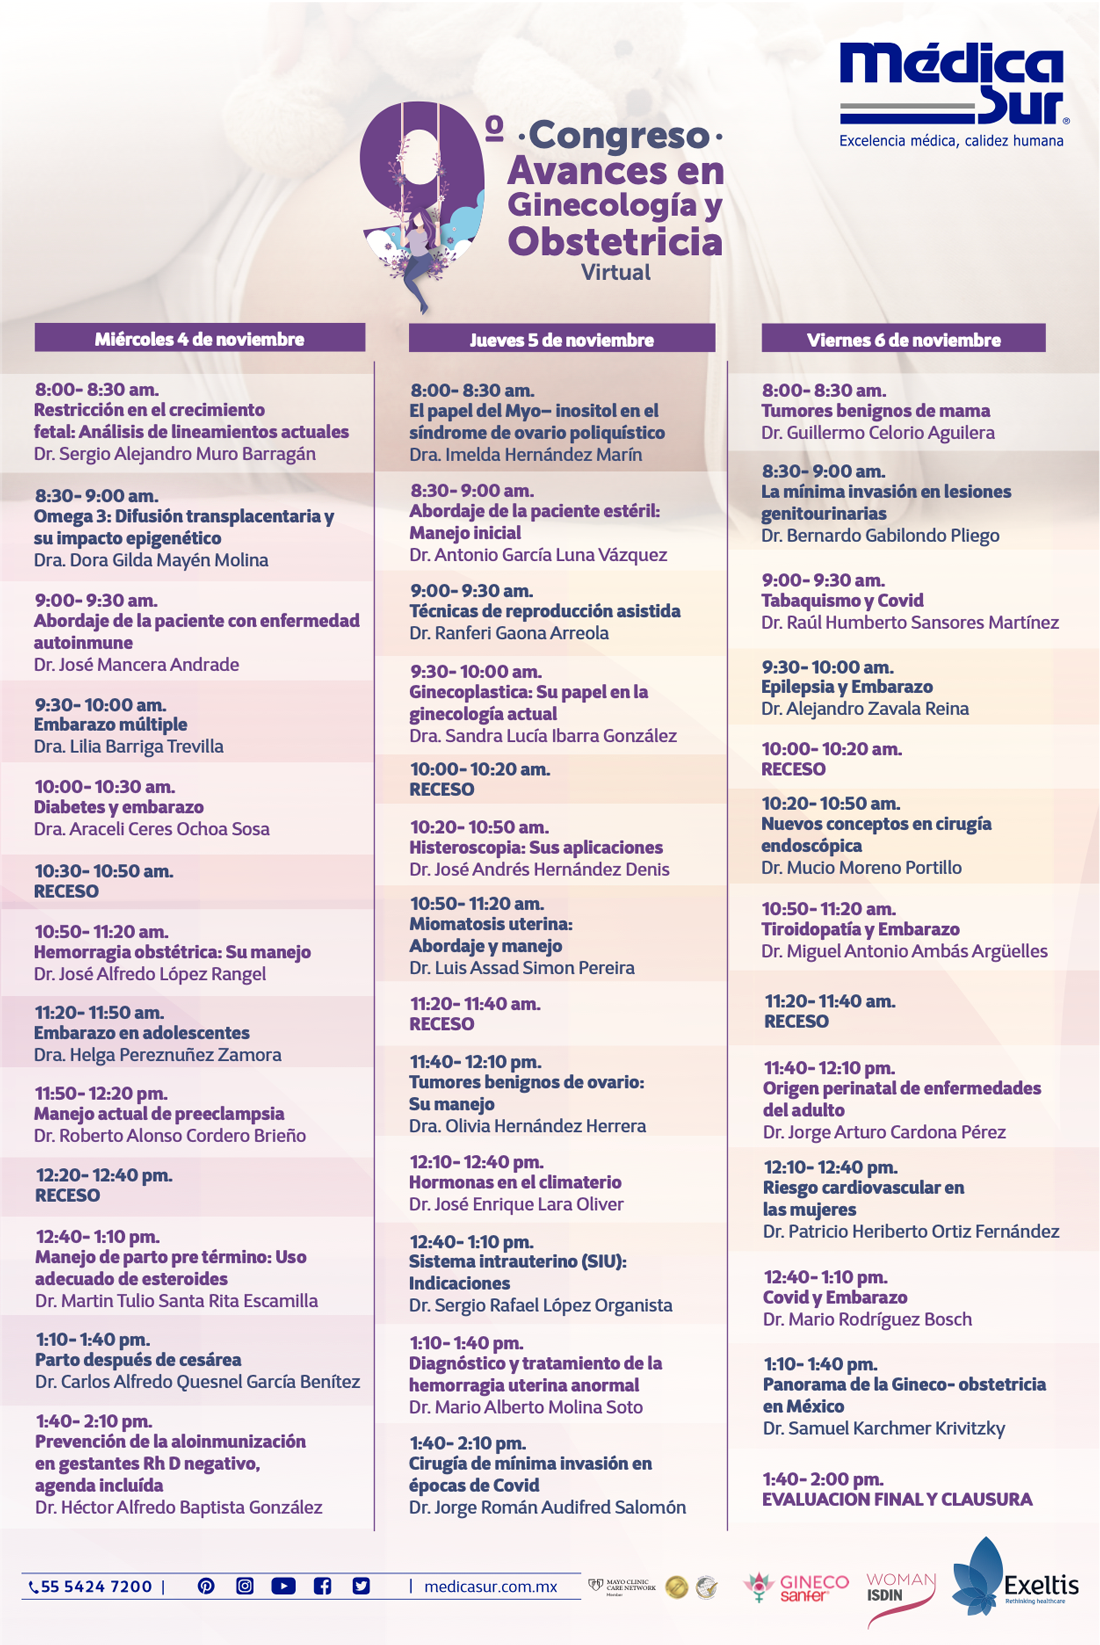 9 Congreso de Avances en Ginecologa y Obstetricia